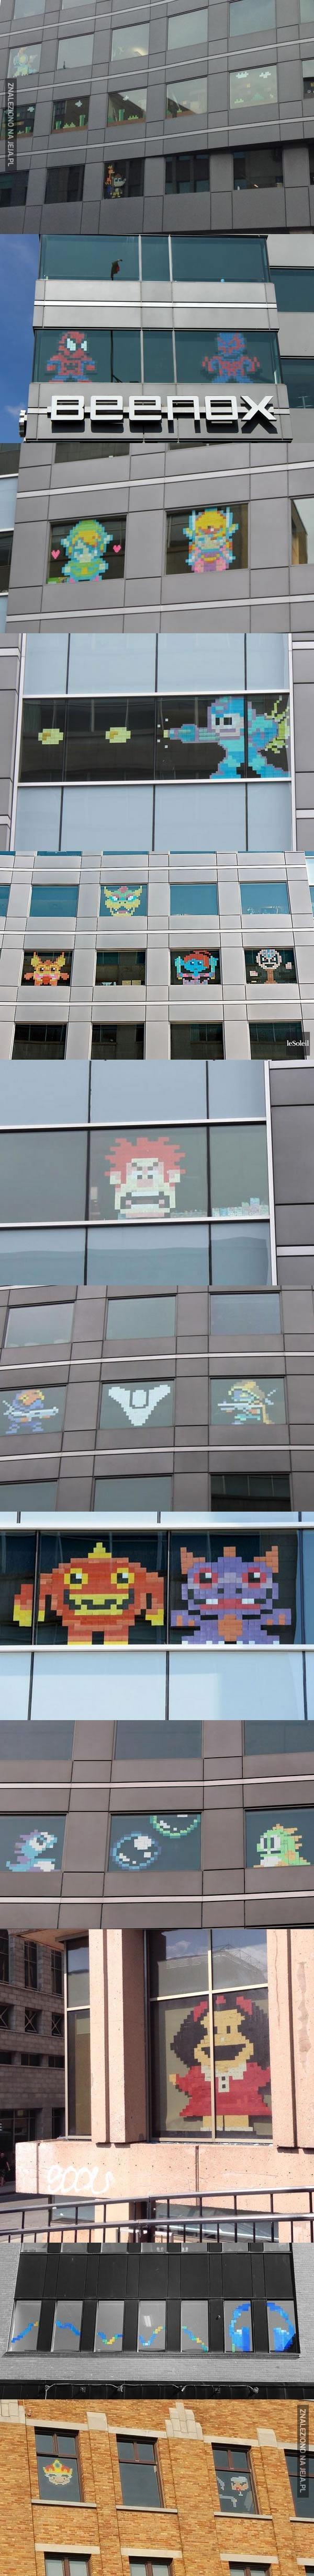 Pixelowe ludziki w biurowych oknach